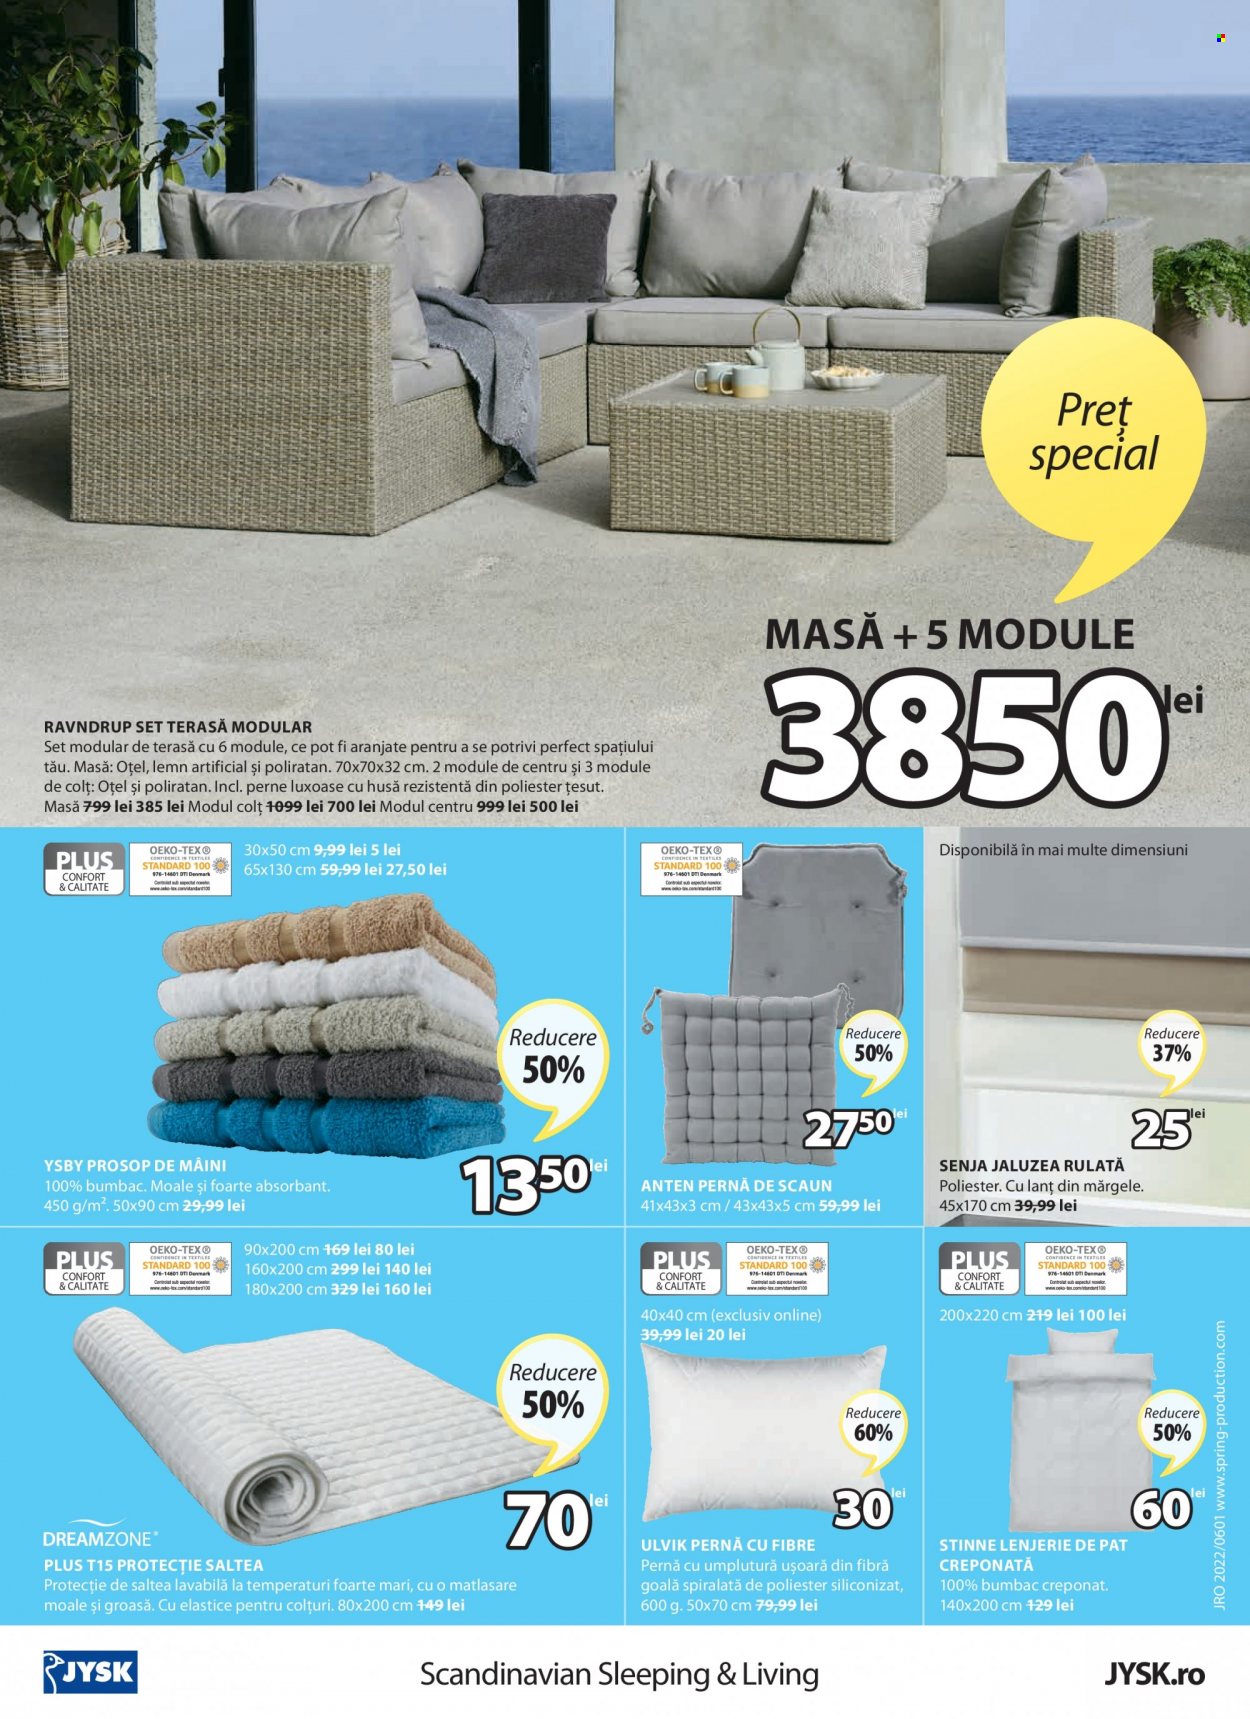 thumbnail - Cataloage JYSK - 02.06.2022 - 29.06.2022 - Produse în vânzare - pat, saltea, pernă de scaun, pernă cu fibre, lenjerie, prosop, masă. Pagina 24.